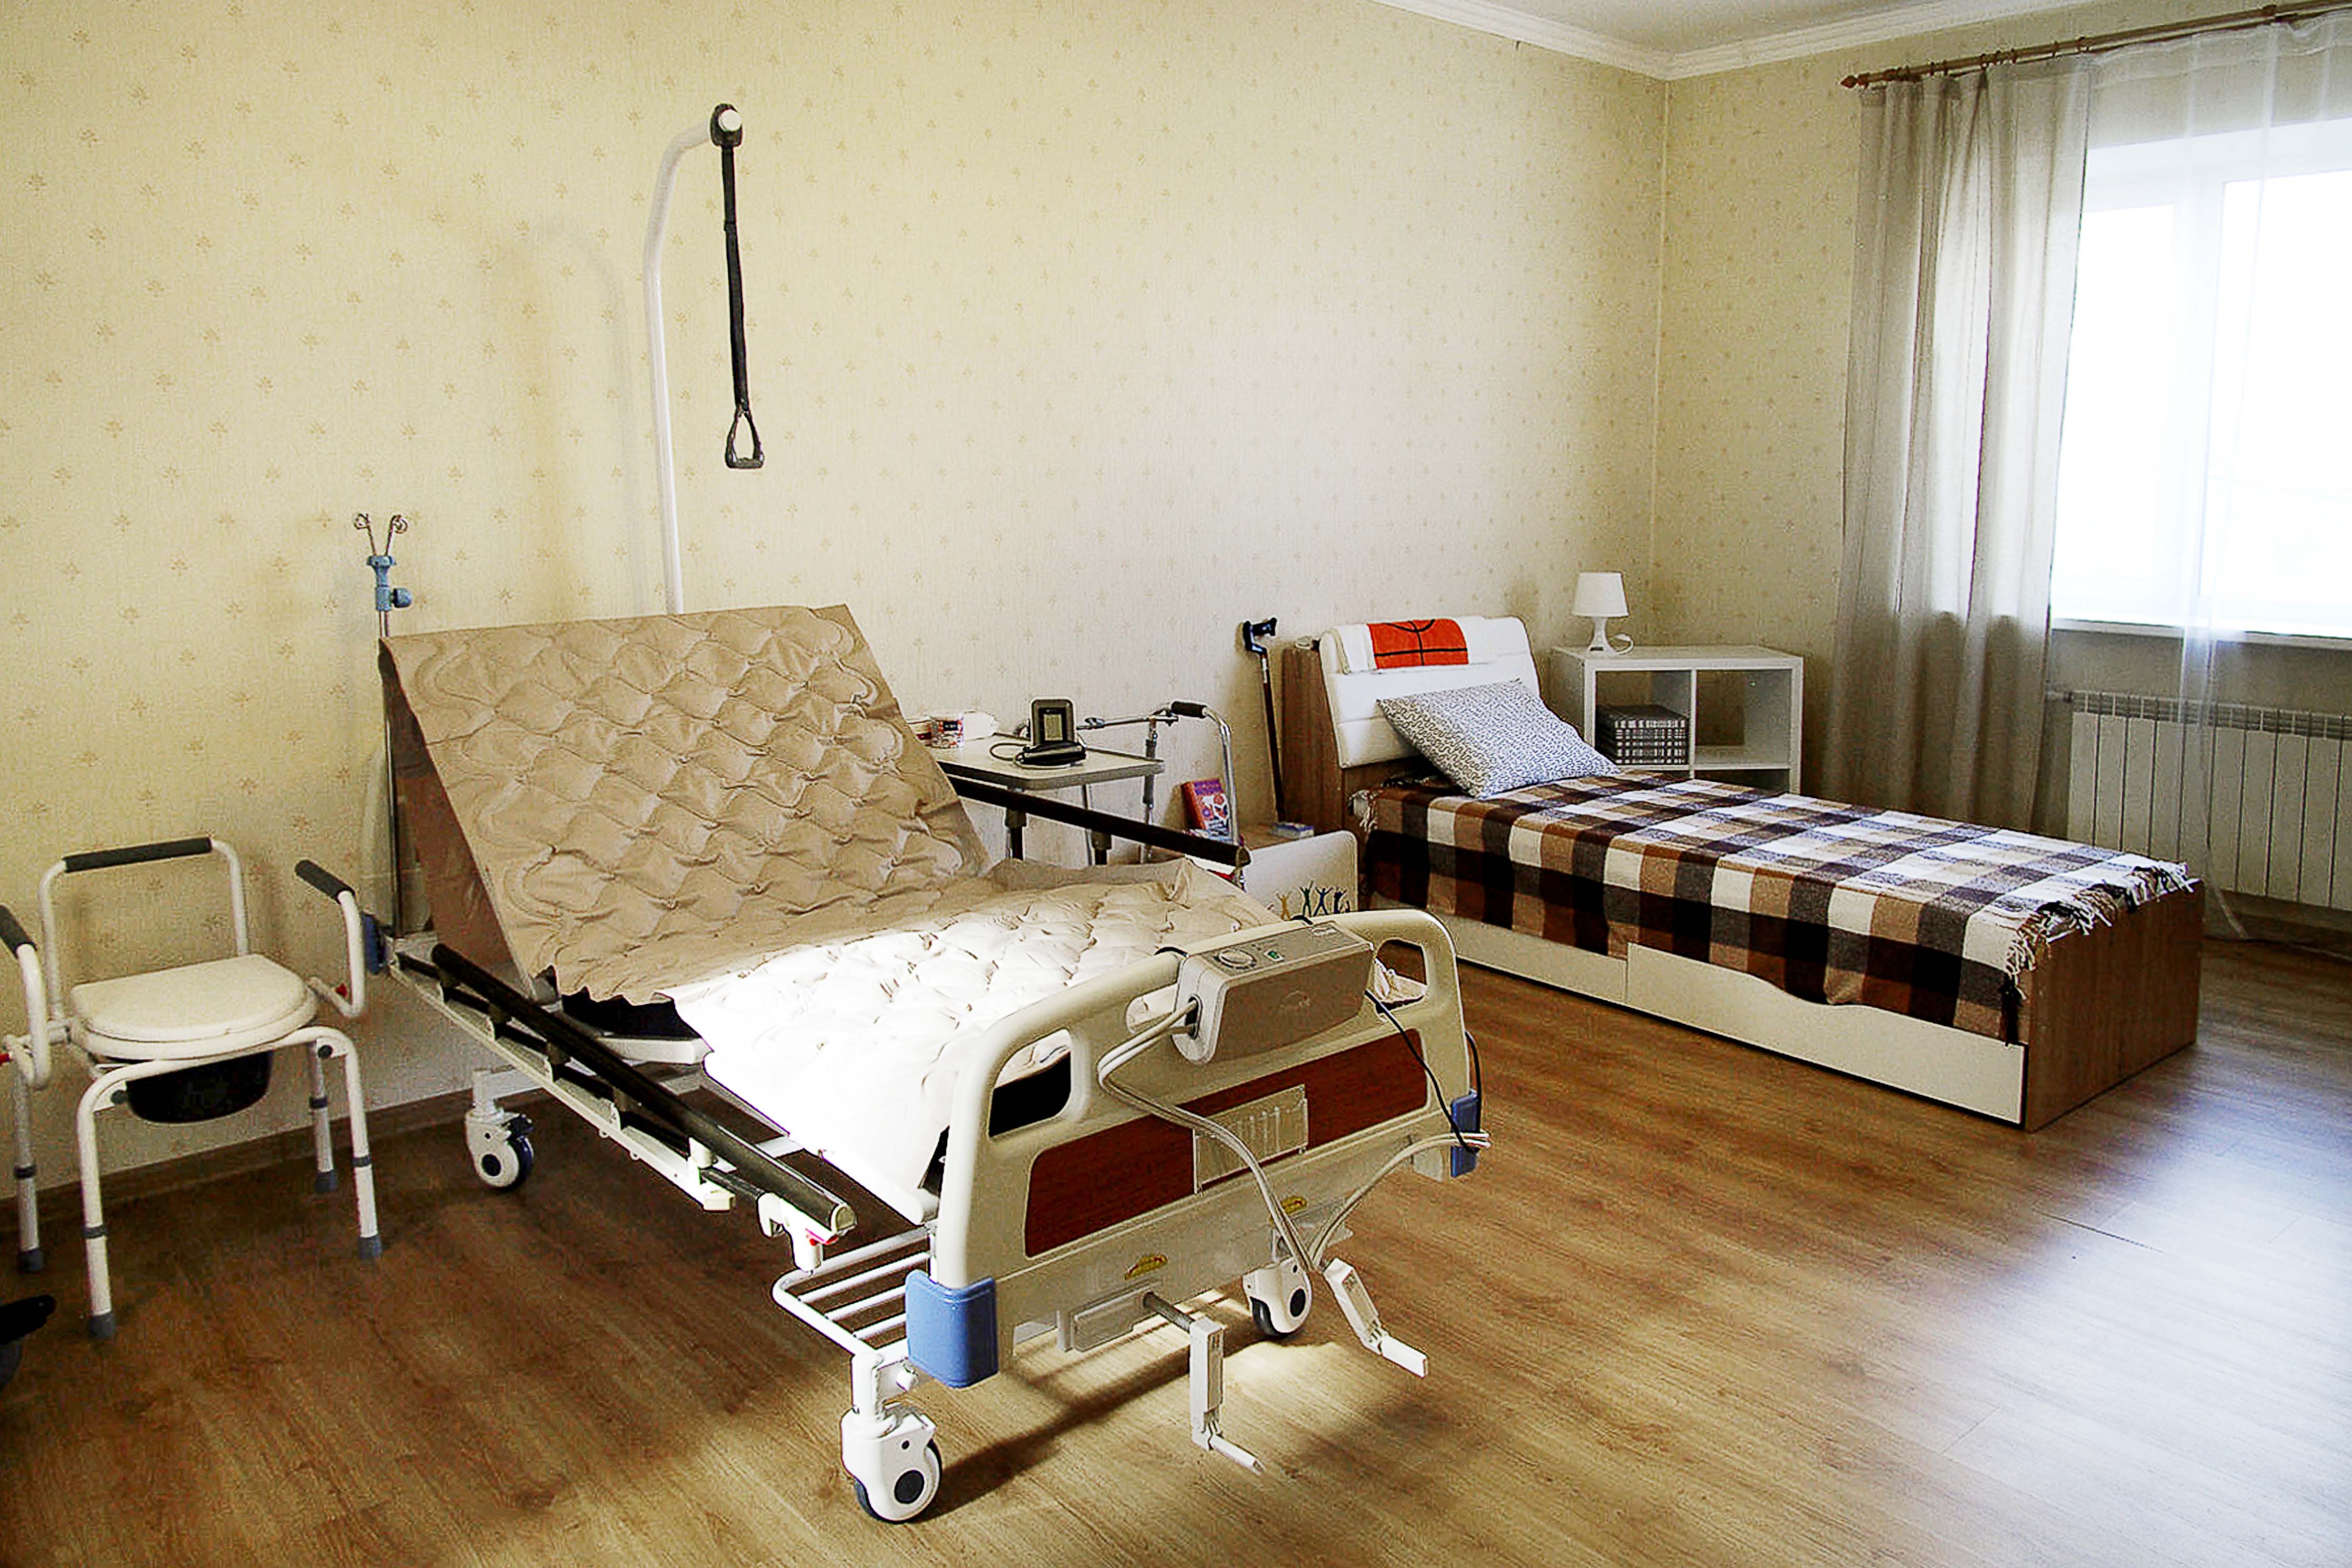 Хостел для лежачих больных доброта. Юсуповская больница в Москве реабилитационный центр. Комната для лежачих больных. Комната лежачего больного. Кровать для пожилых людей.